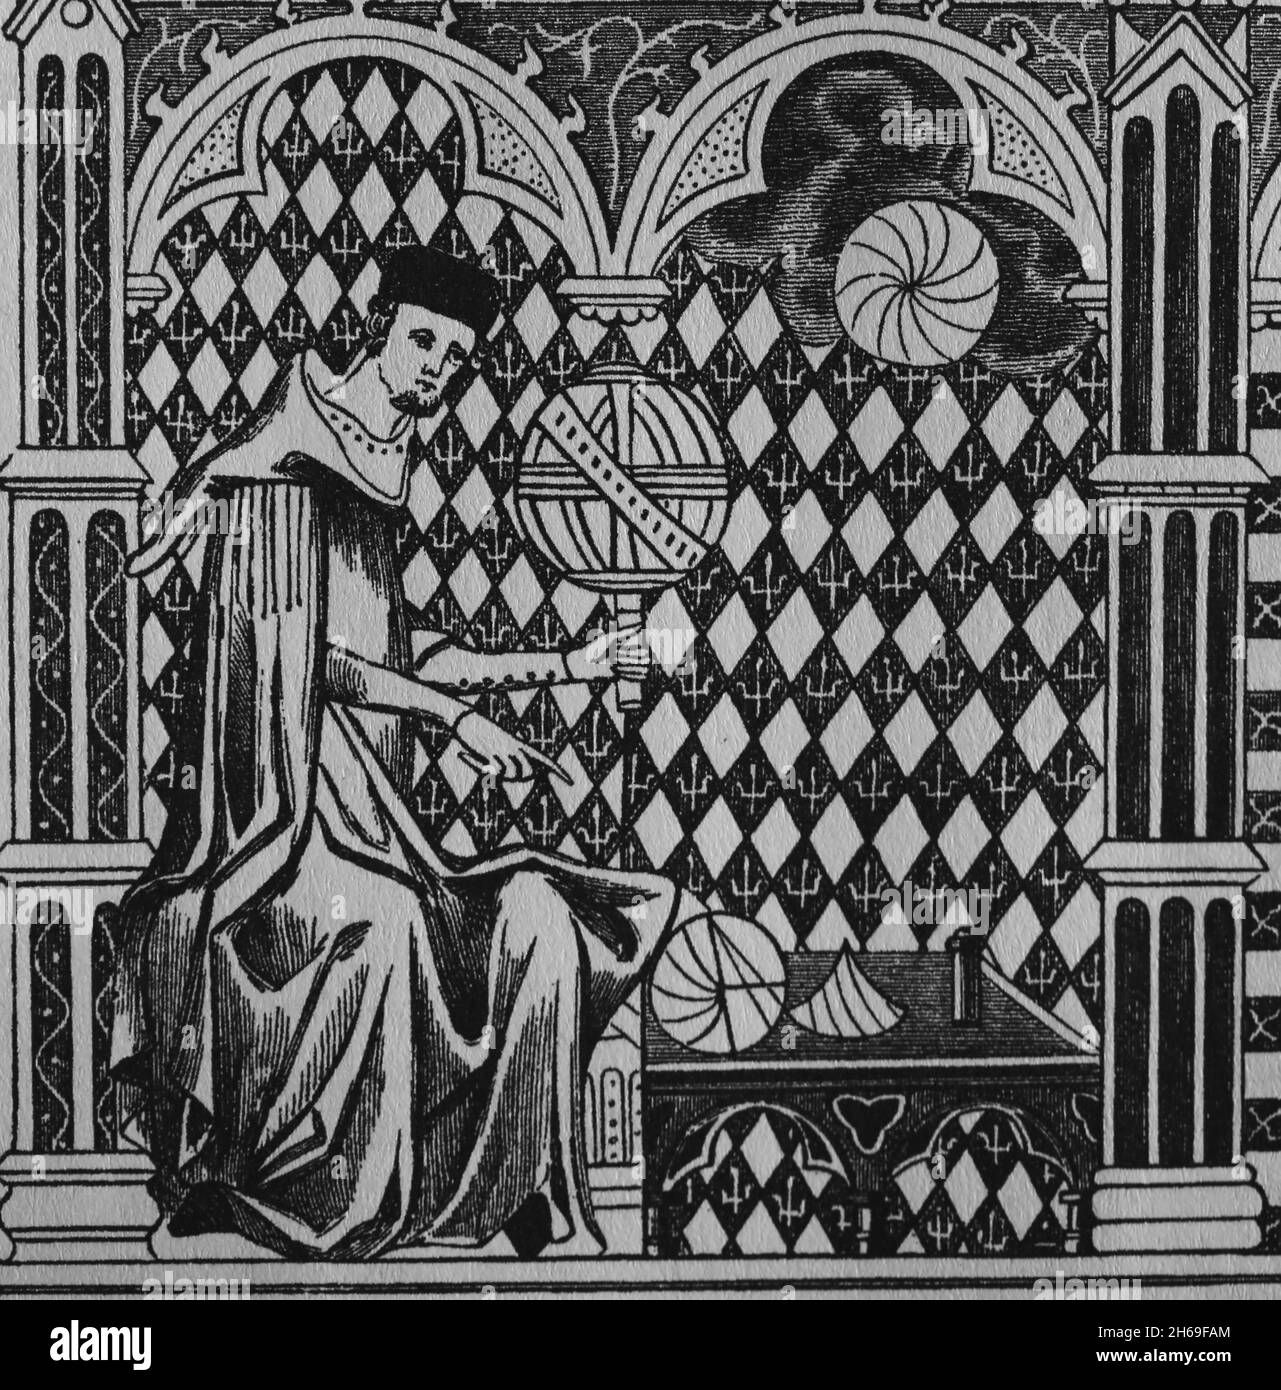 Matematici medievali. Mistico copiare un manoscritto. Incisione dopo una miniatura nel 13 ° secolo. Foto Stock